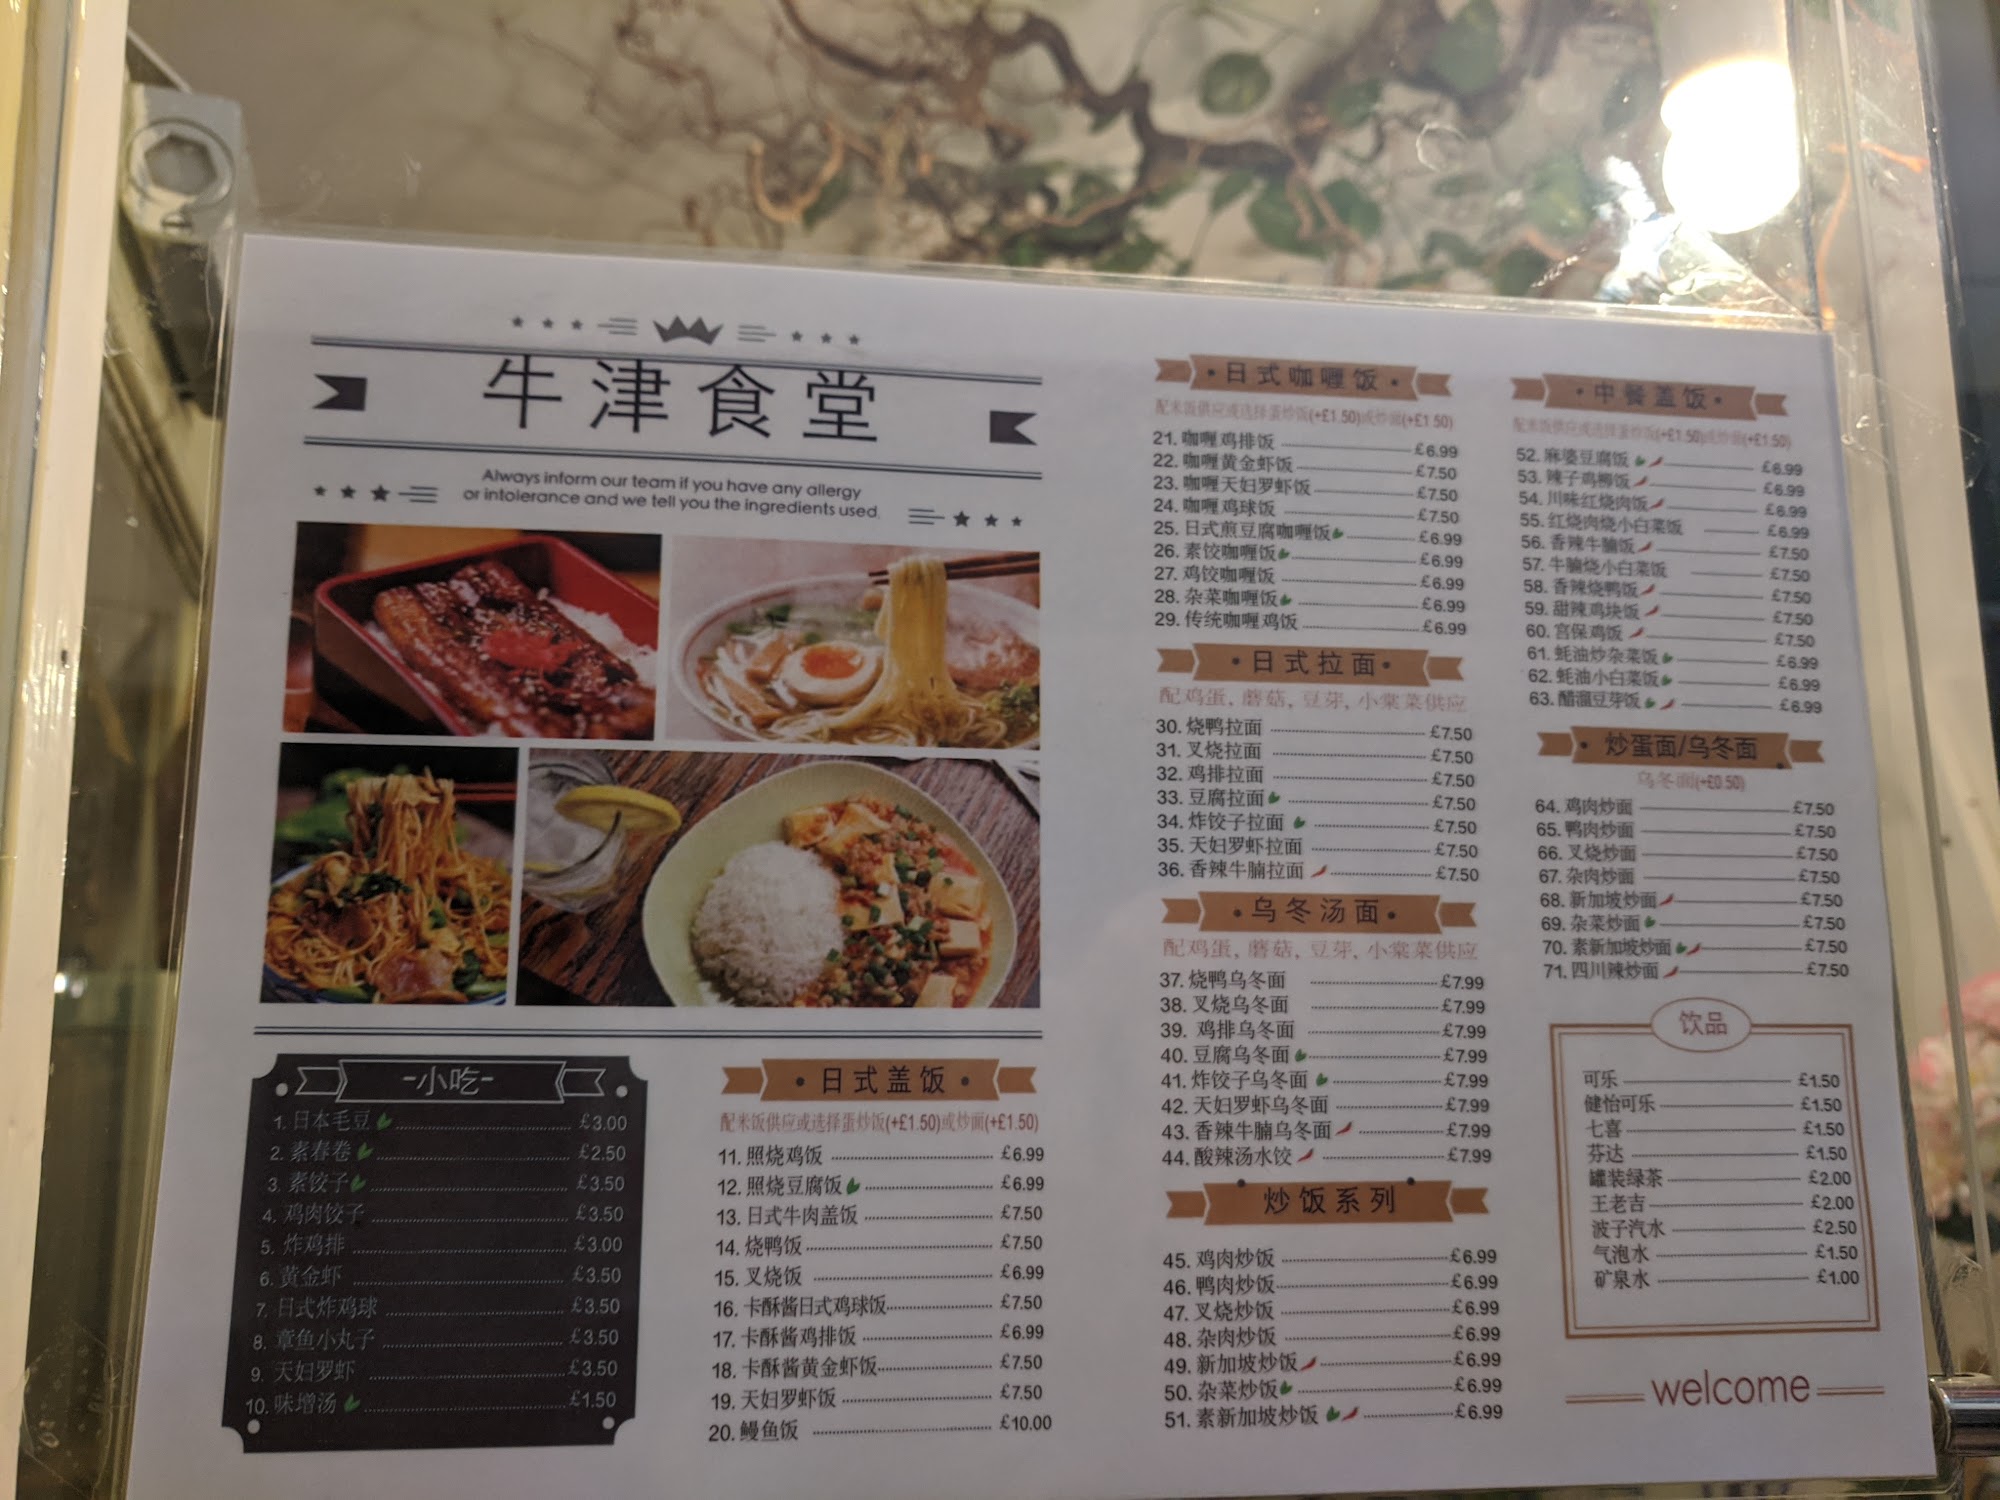 牛津食堂 / Donburi inn